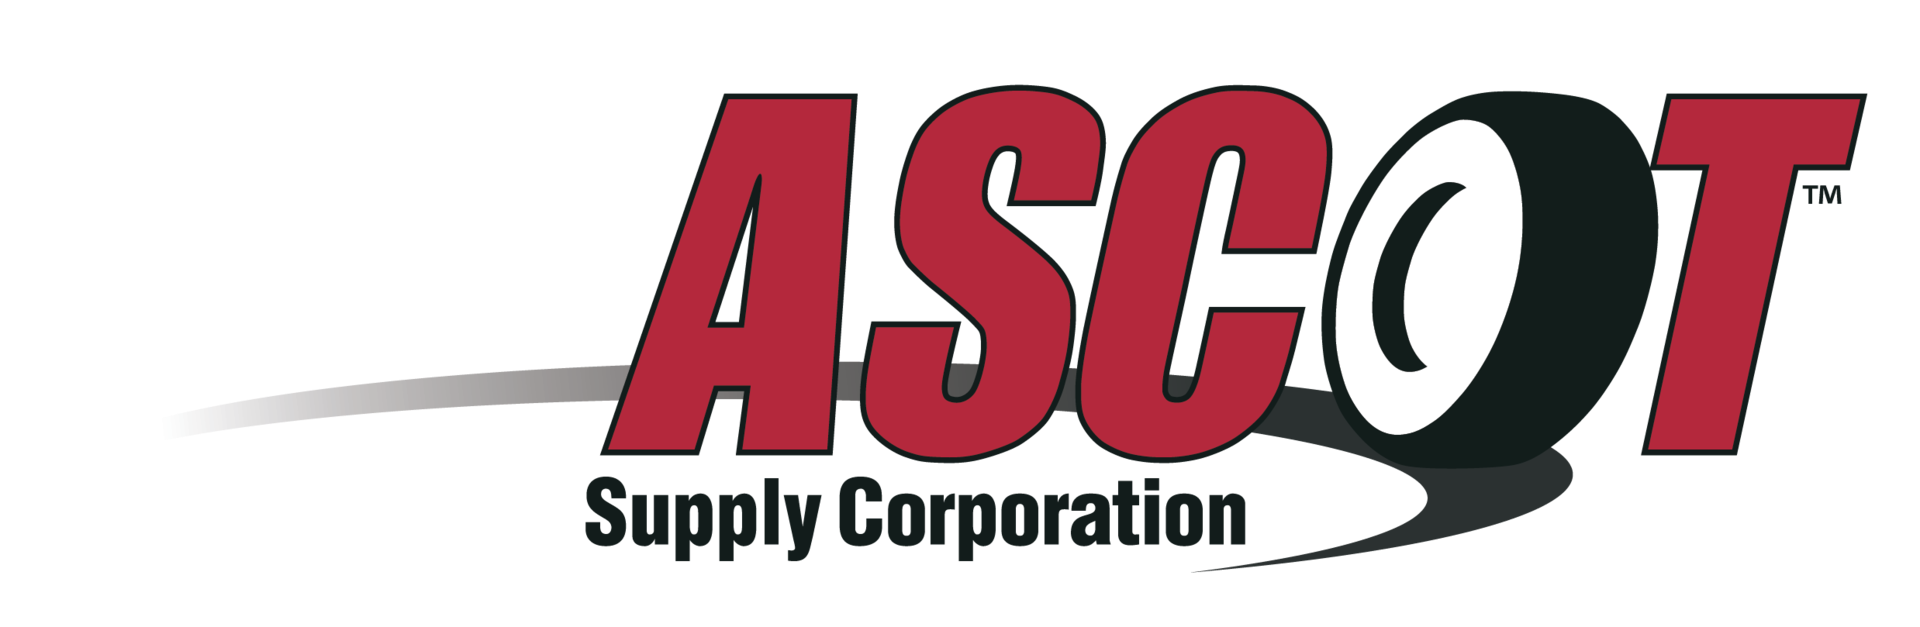 Ascot Supply Co. | Fleet Maintenance